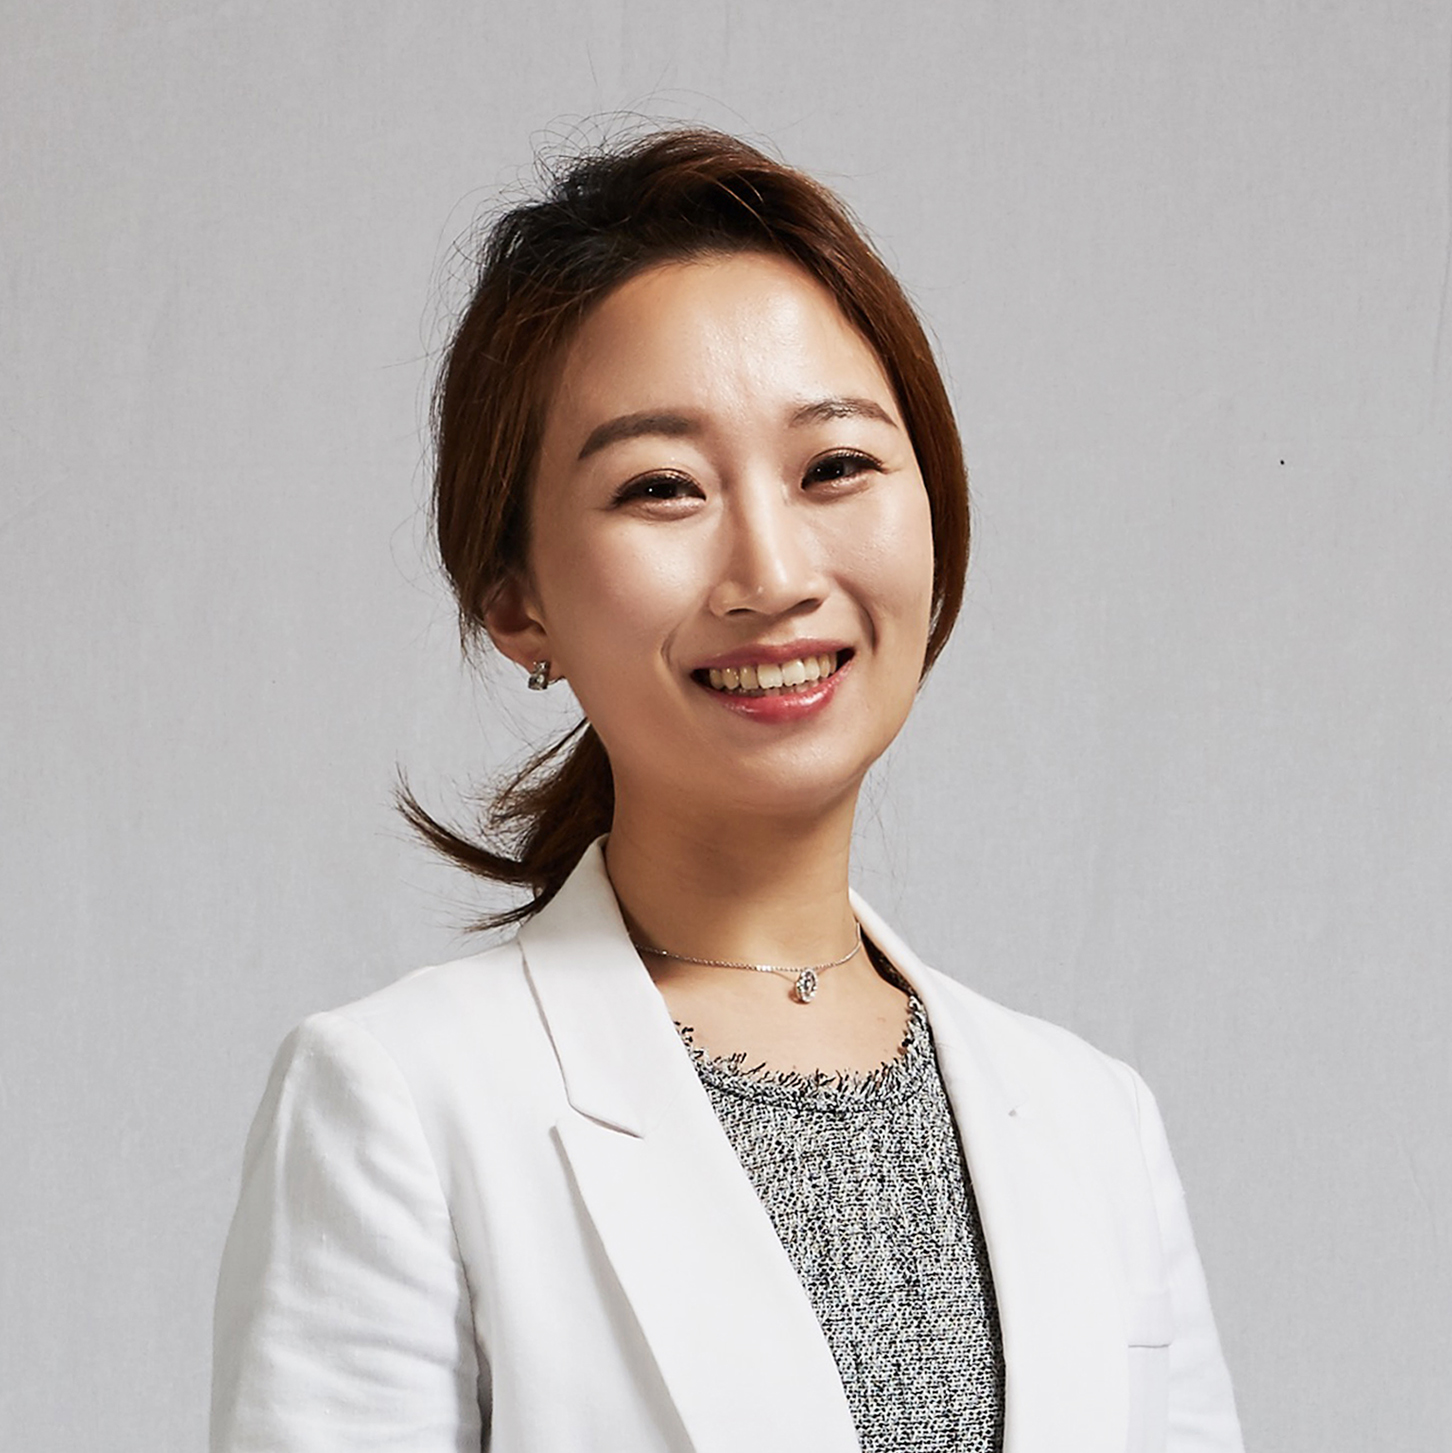 김민영 교수